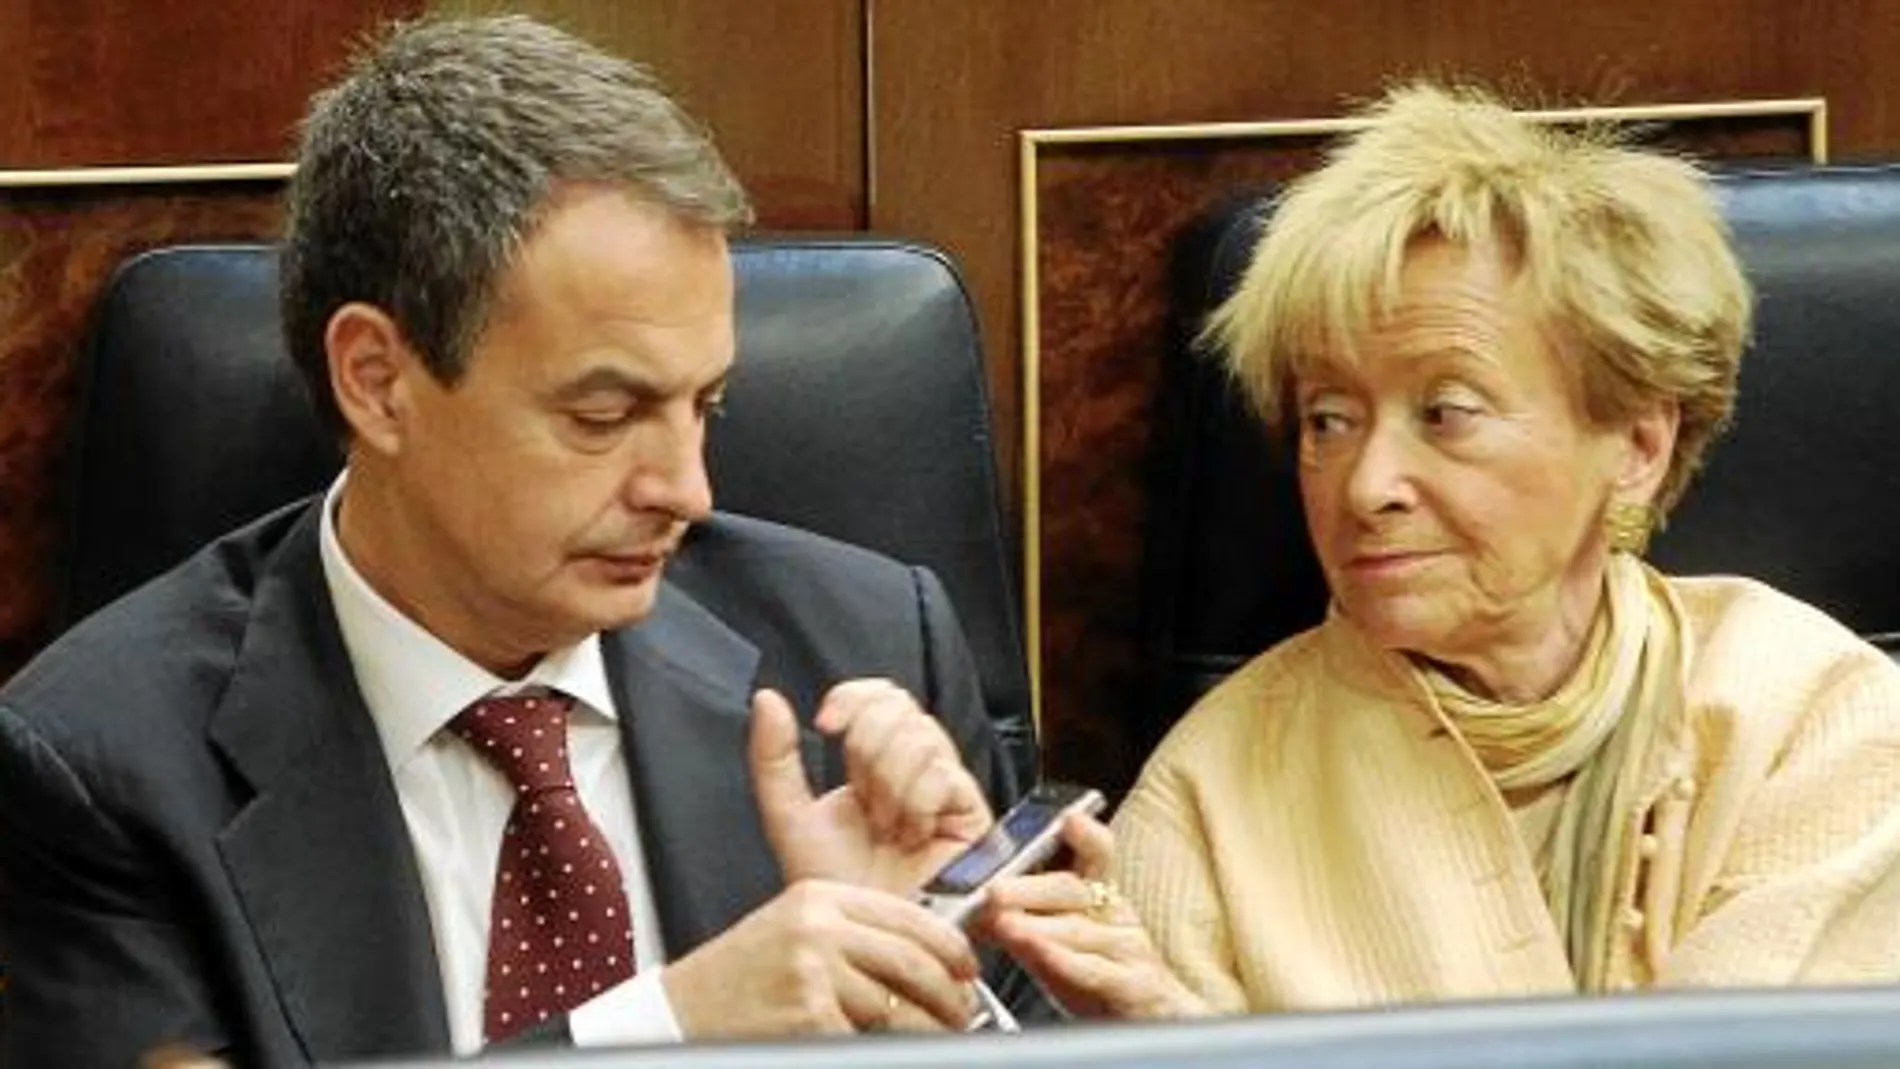 LLAMADA A DURAN. Zapatero no podía comunicar con el portavoz de CiU, y De la Vega le pasó su móvil para que hablaran